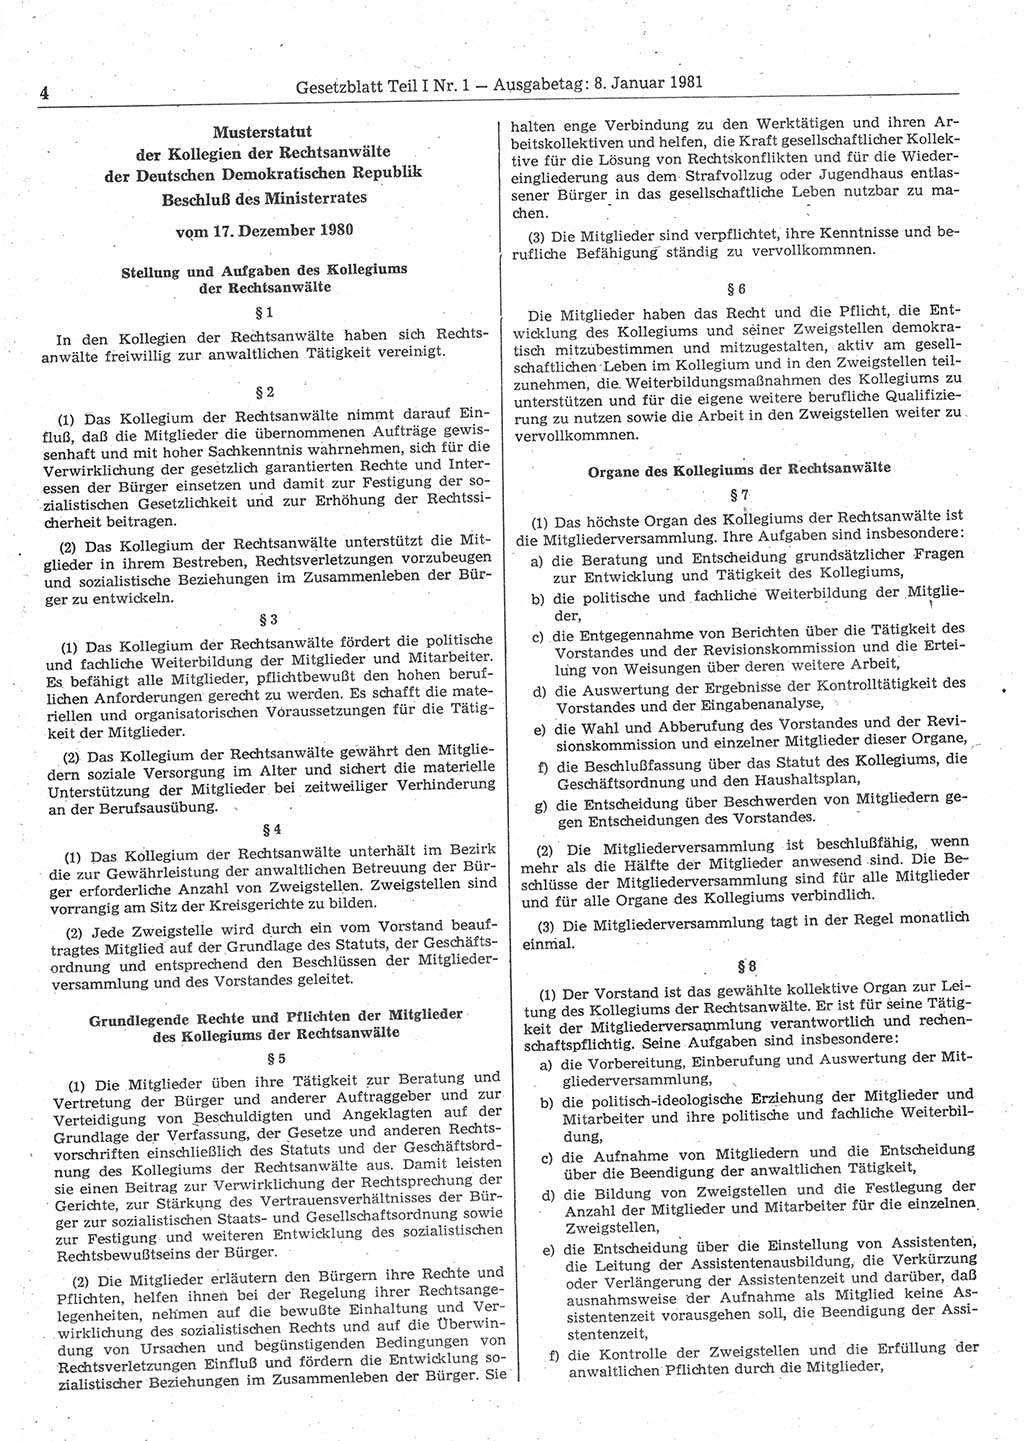 Gesetzblatt (GBl.) der Deutschen Demokratischen Republik (DDR) Teil Ⅰ 1981, Seite 4 (GBl. DDR Ⅰ 1981, S. 4)